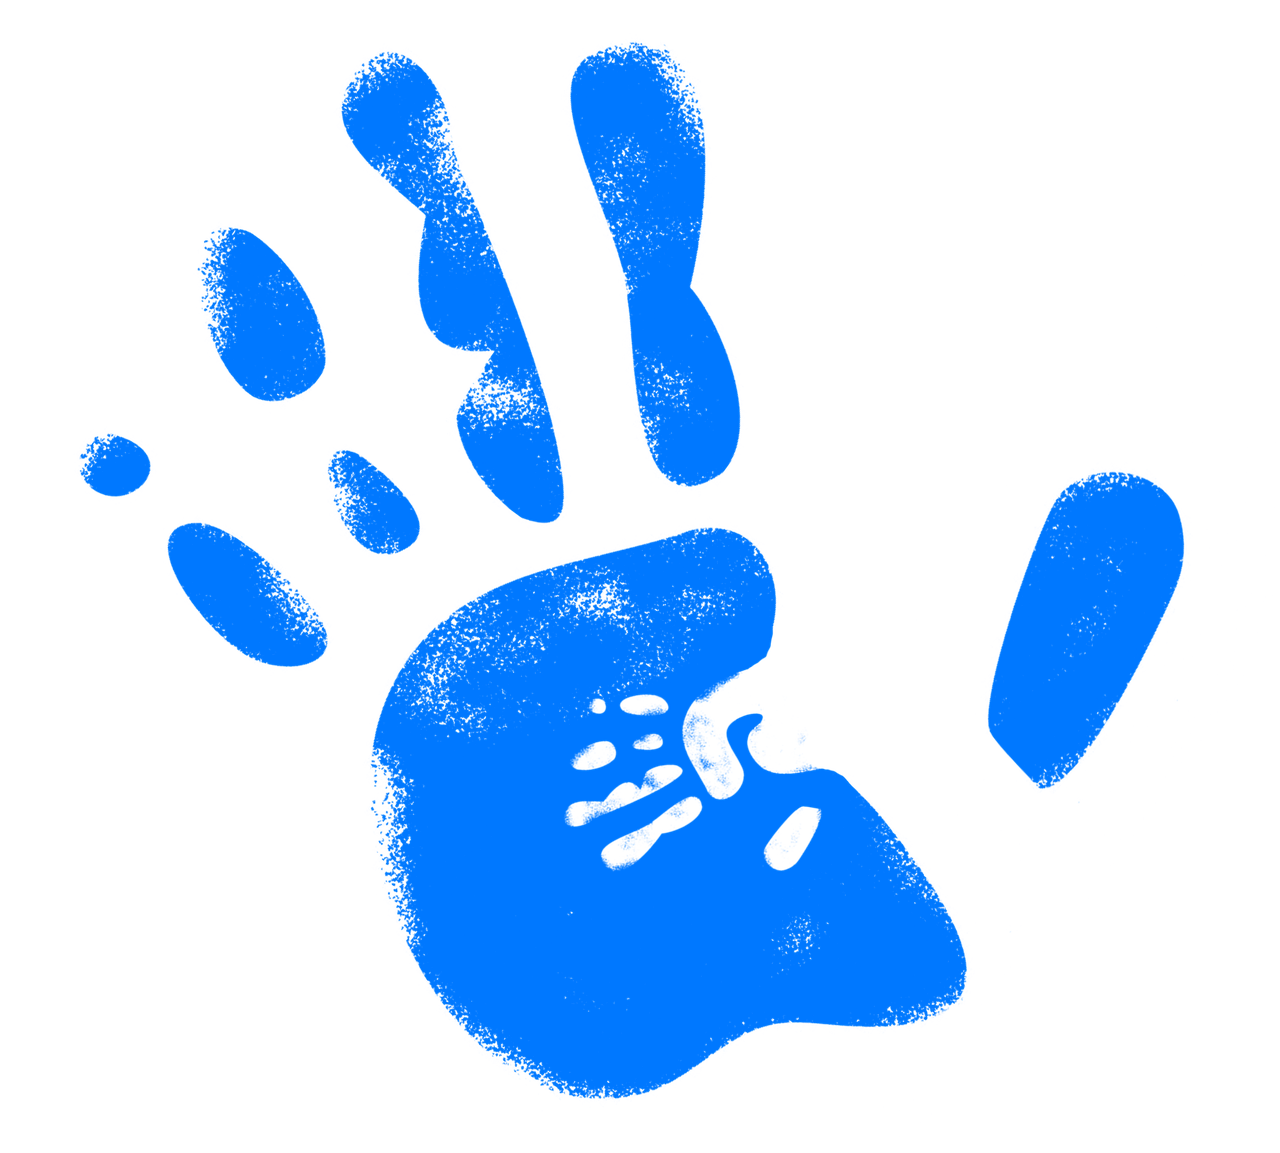 Grafik: Handabdruck auf Glasscheibe ("High Five")